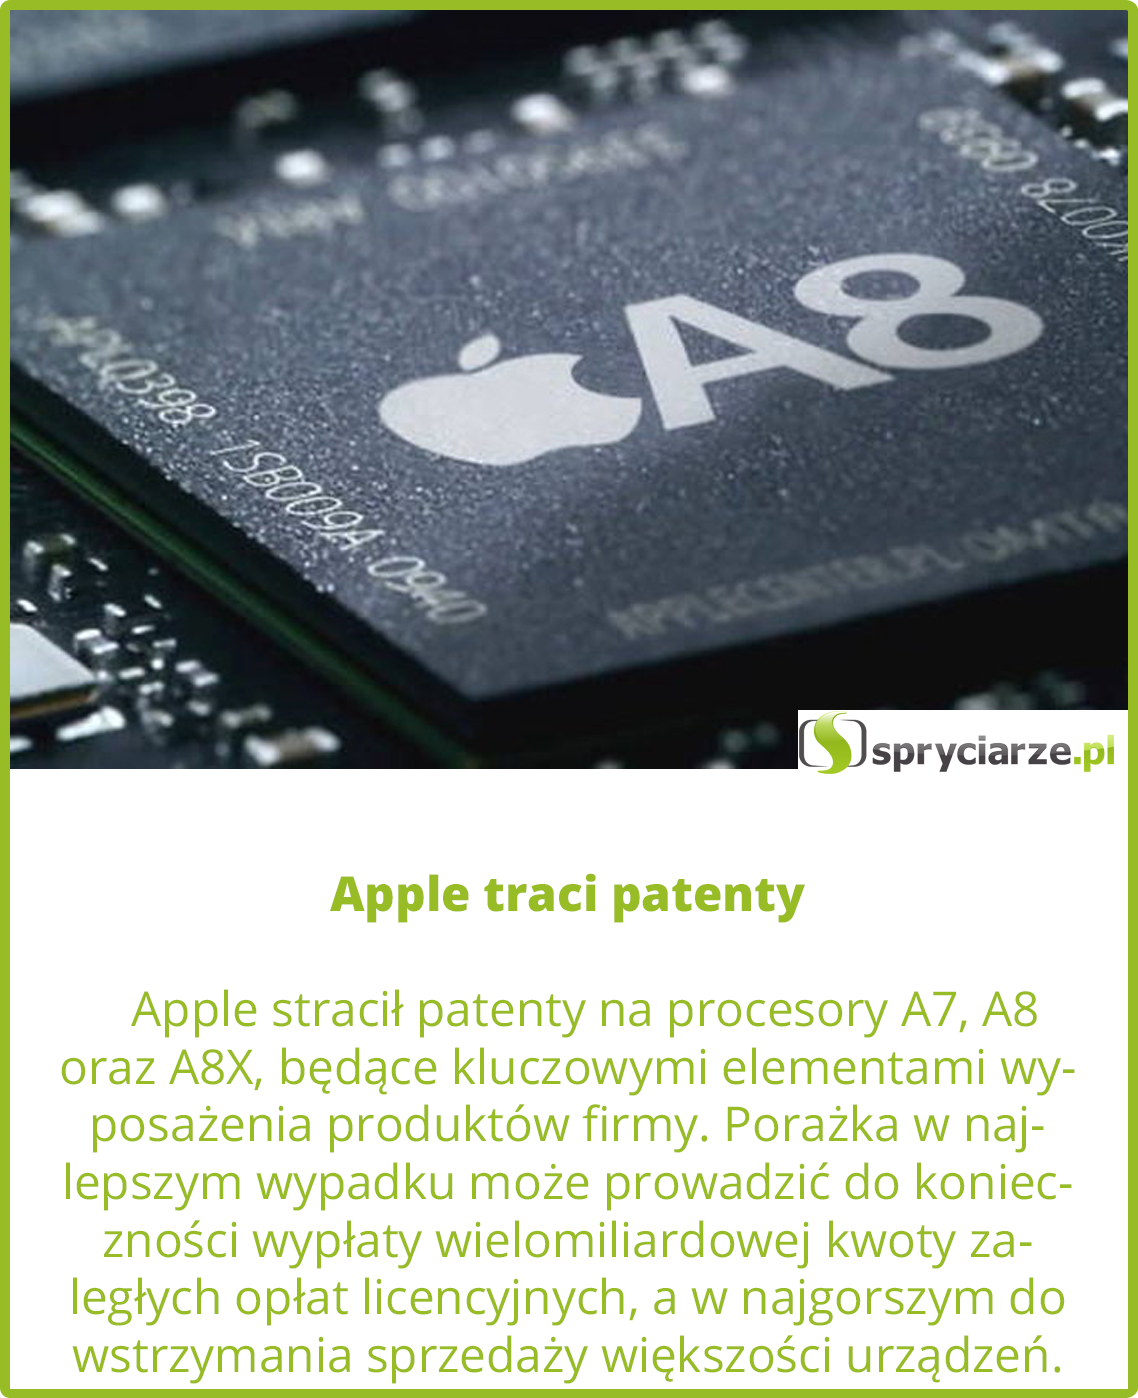 Apple traci patenty